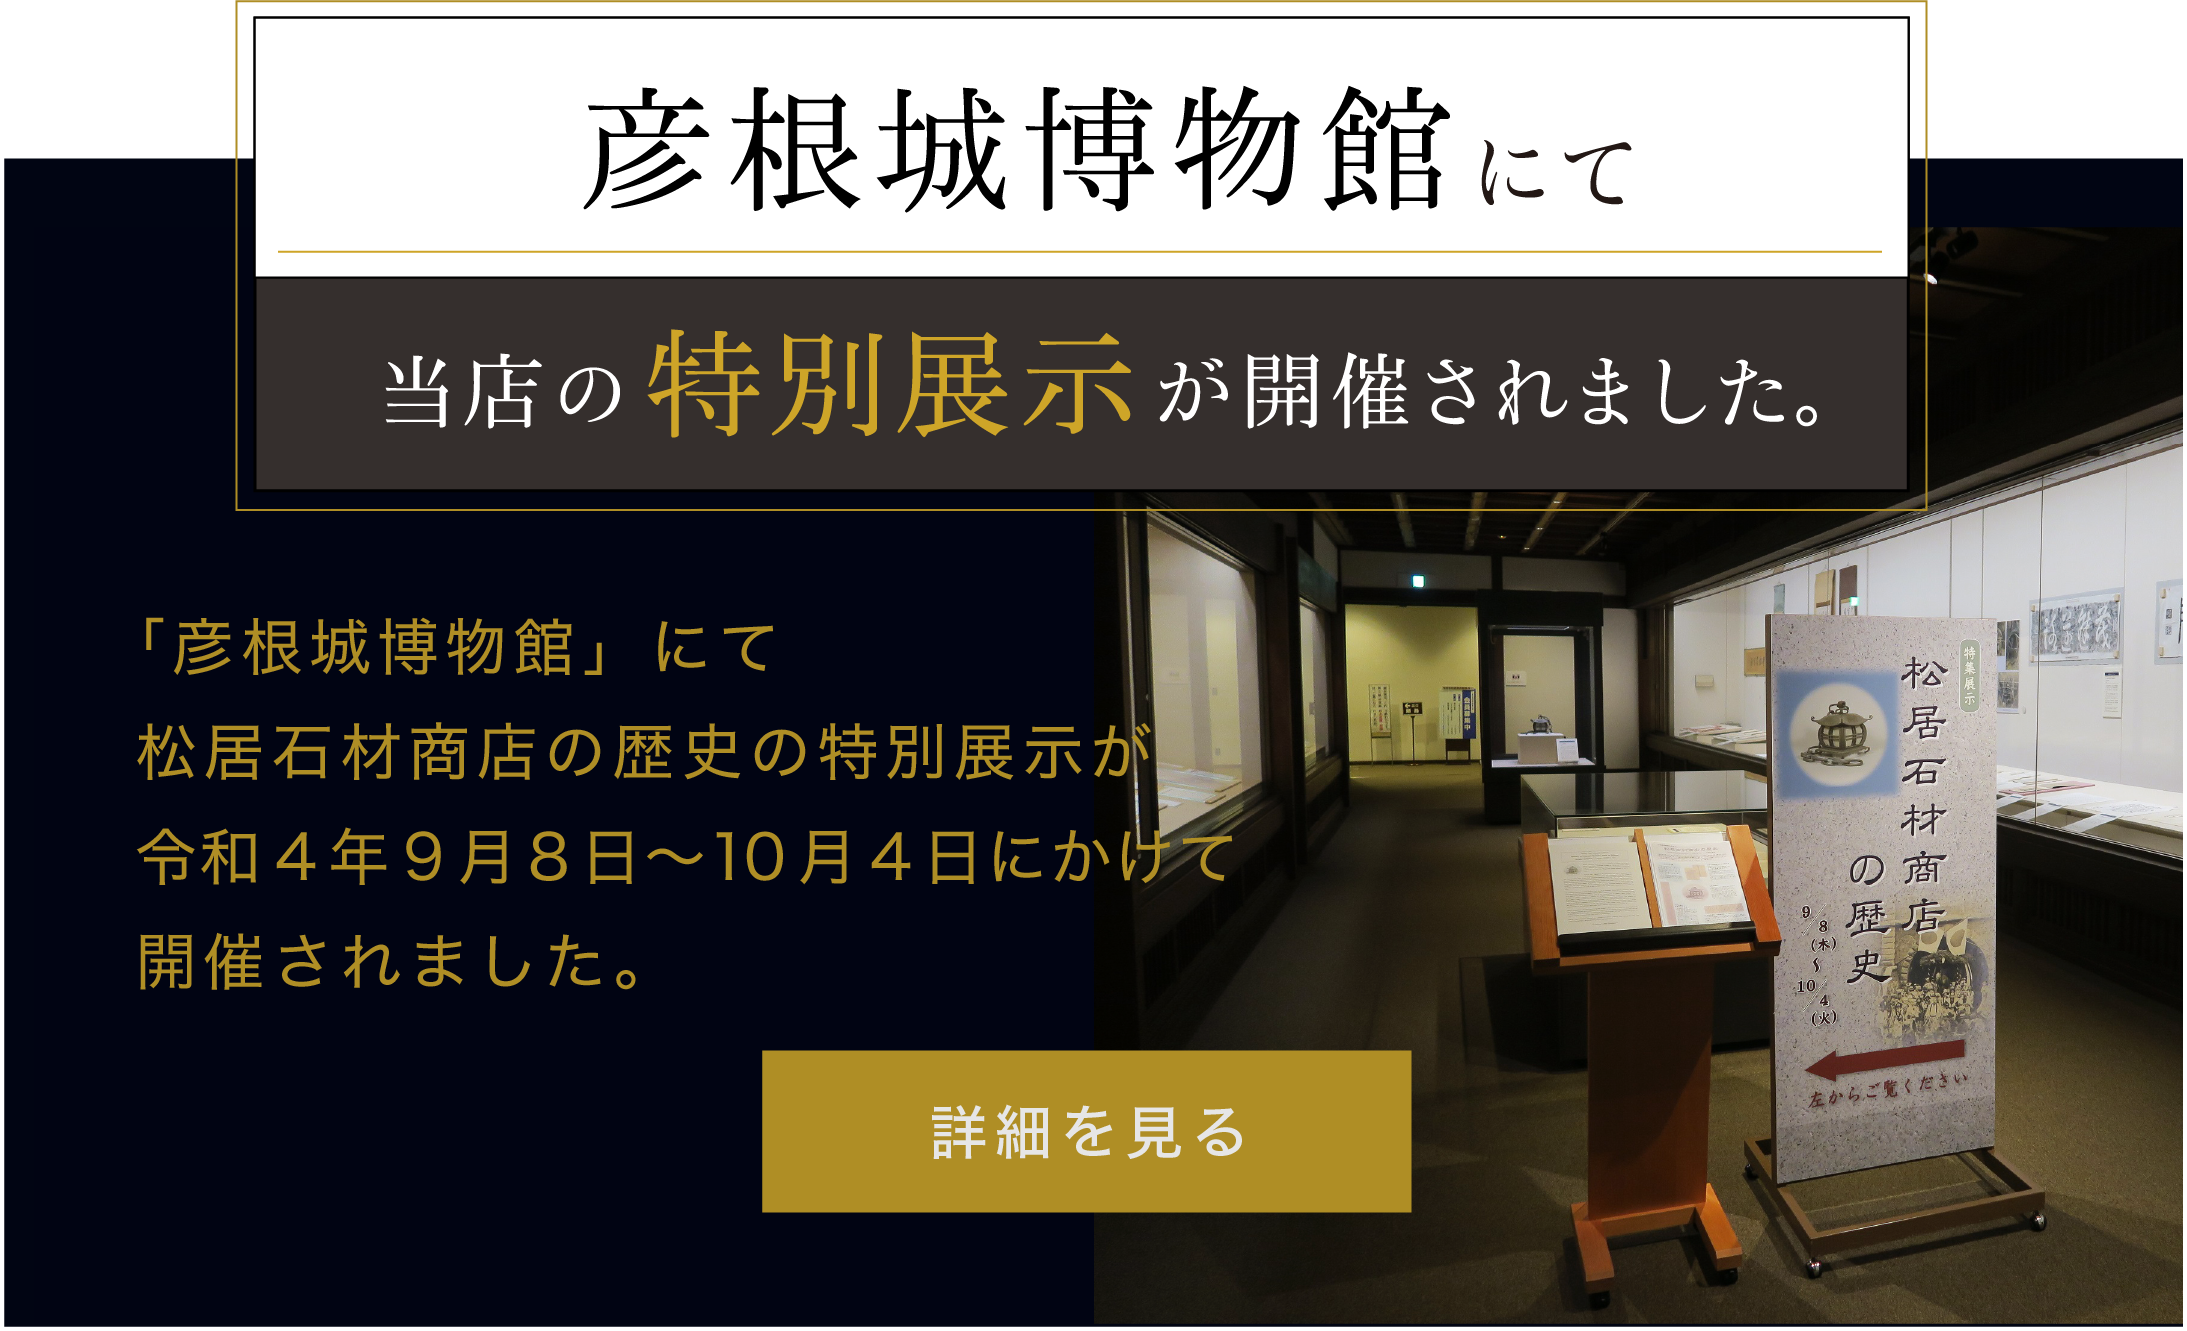 彦根城博物館にて当店の特別展示が開催されました。
「彦根城博物館」にて松居石材商店の歴史の特別展示が令和4年9月8日〜10月4日にかけて開催されました。